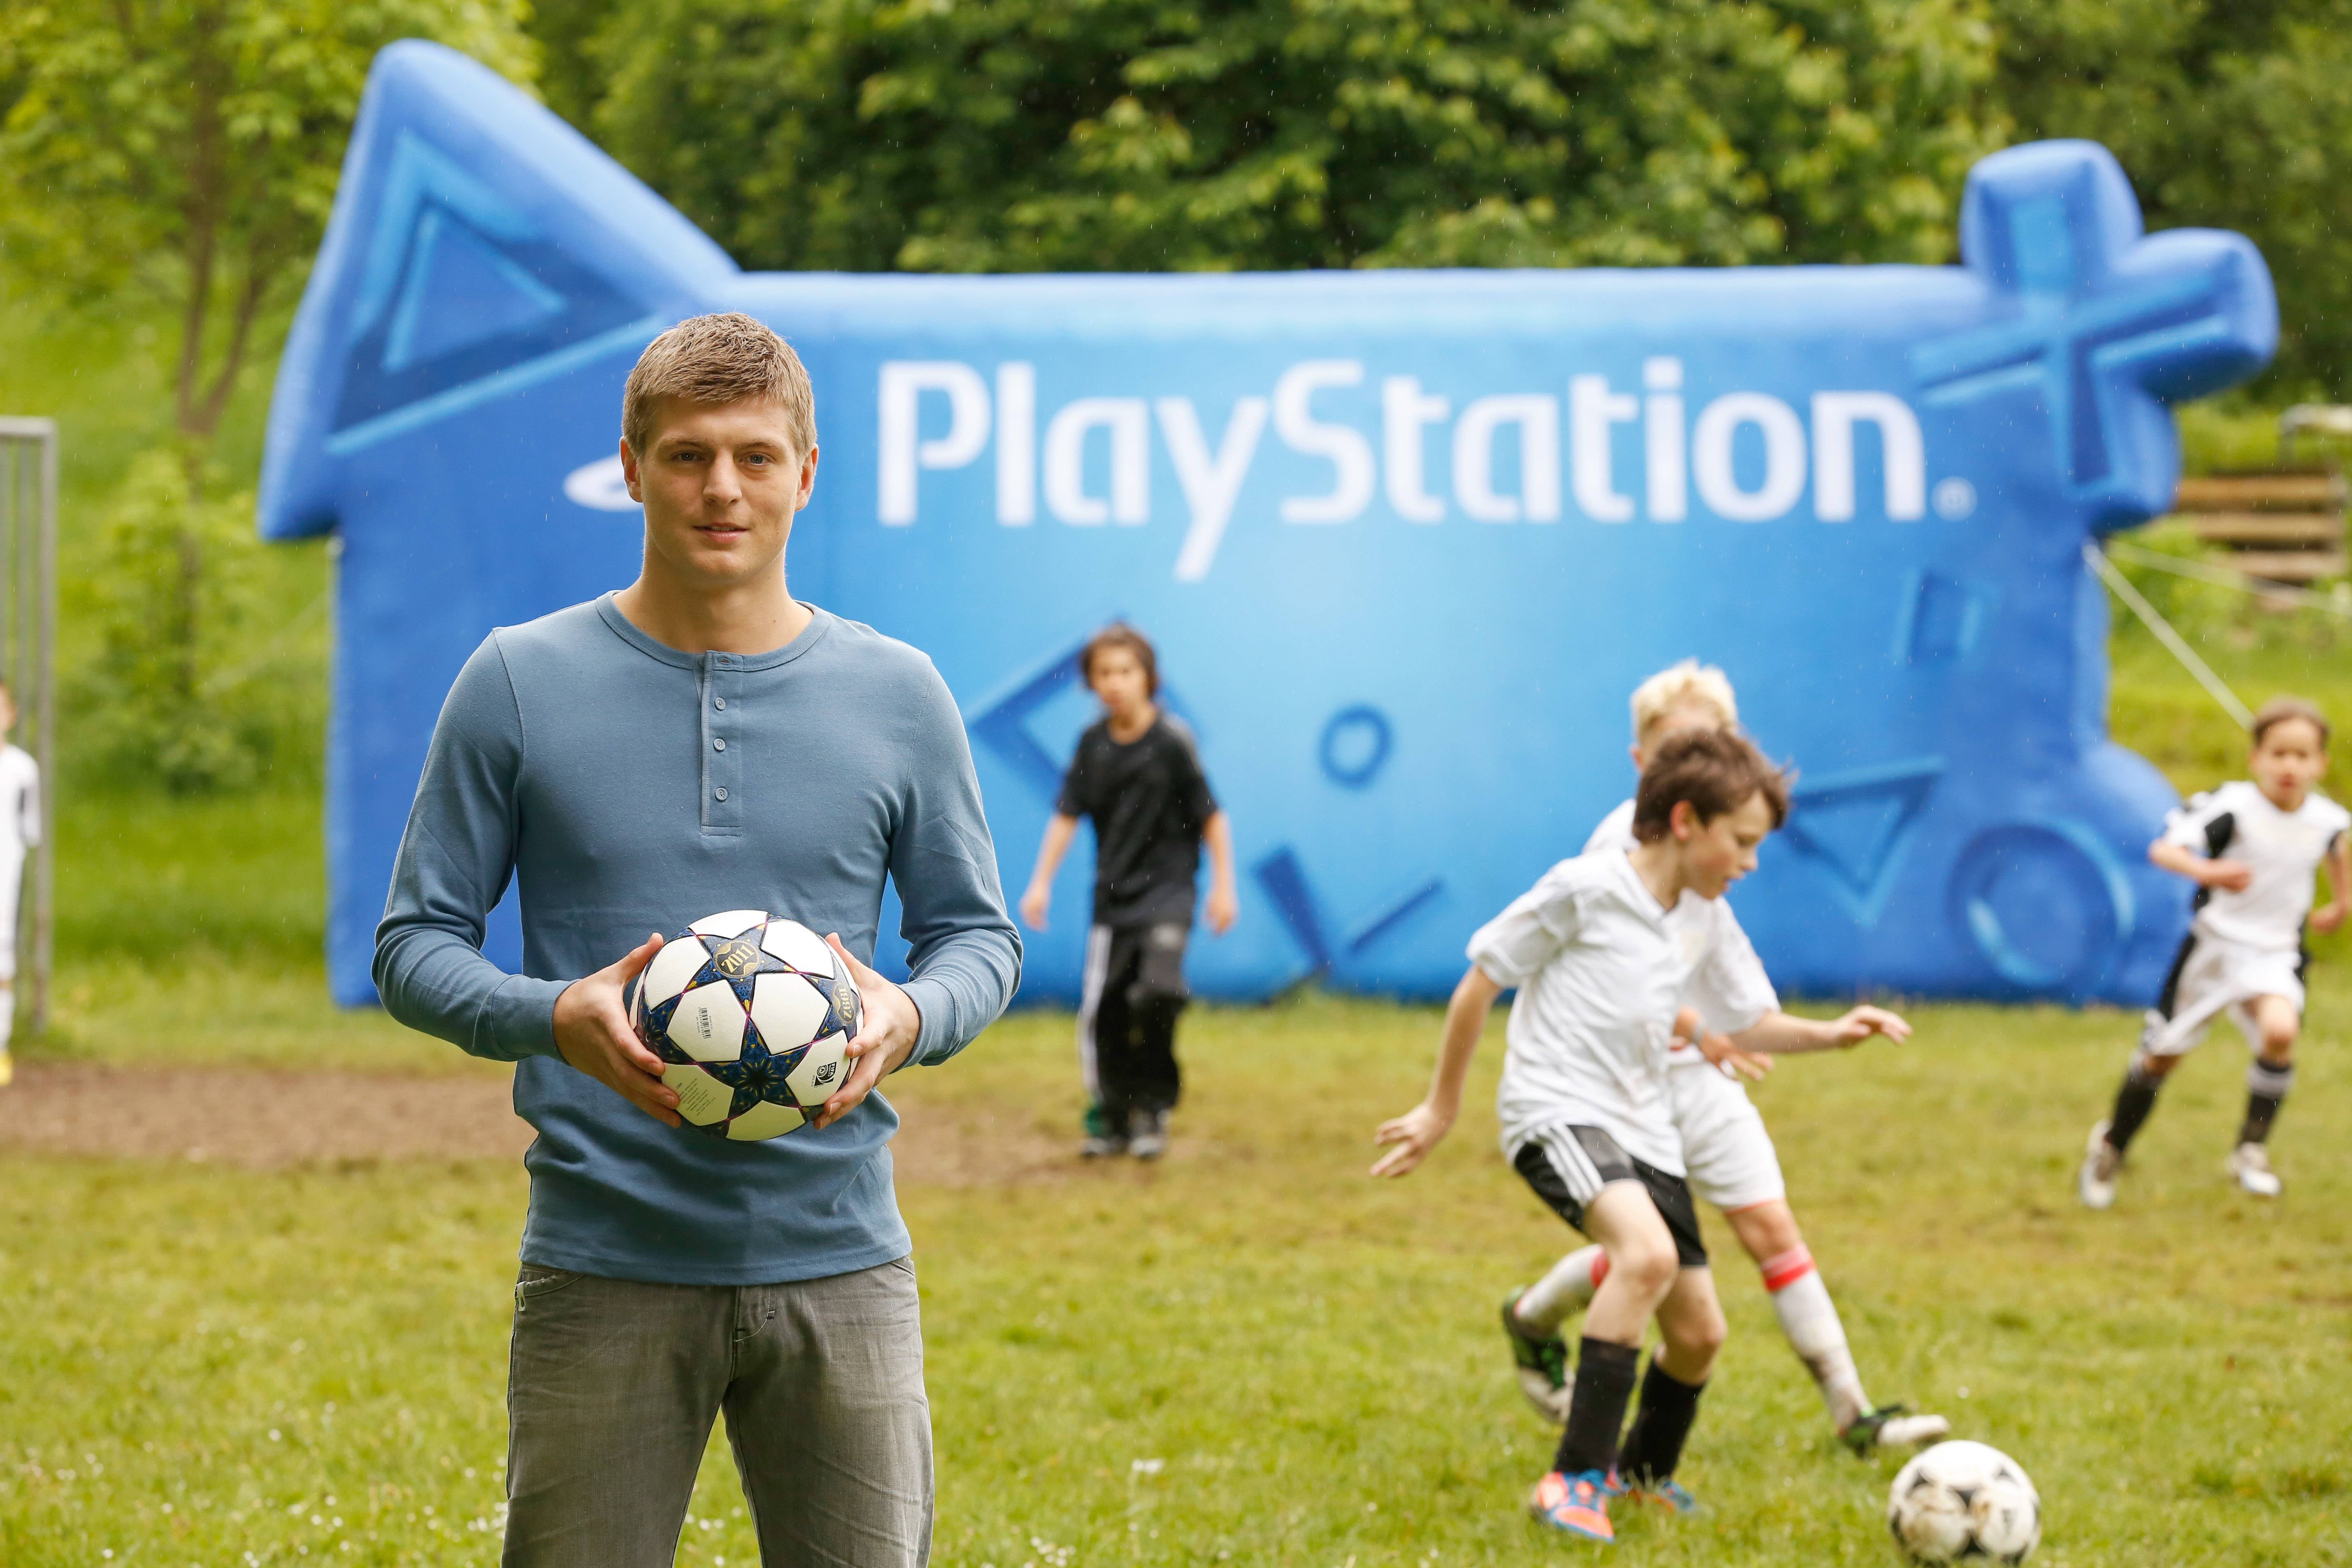 PlayStation und Toni Kroos suchen junge Fußball-Talente